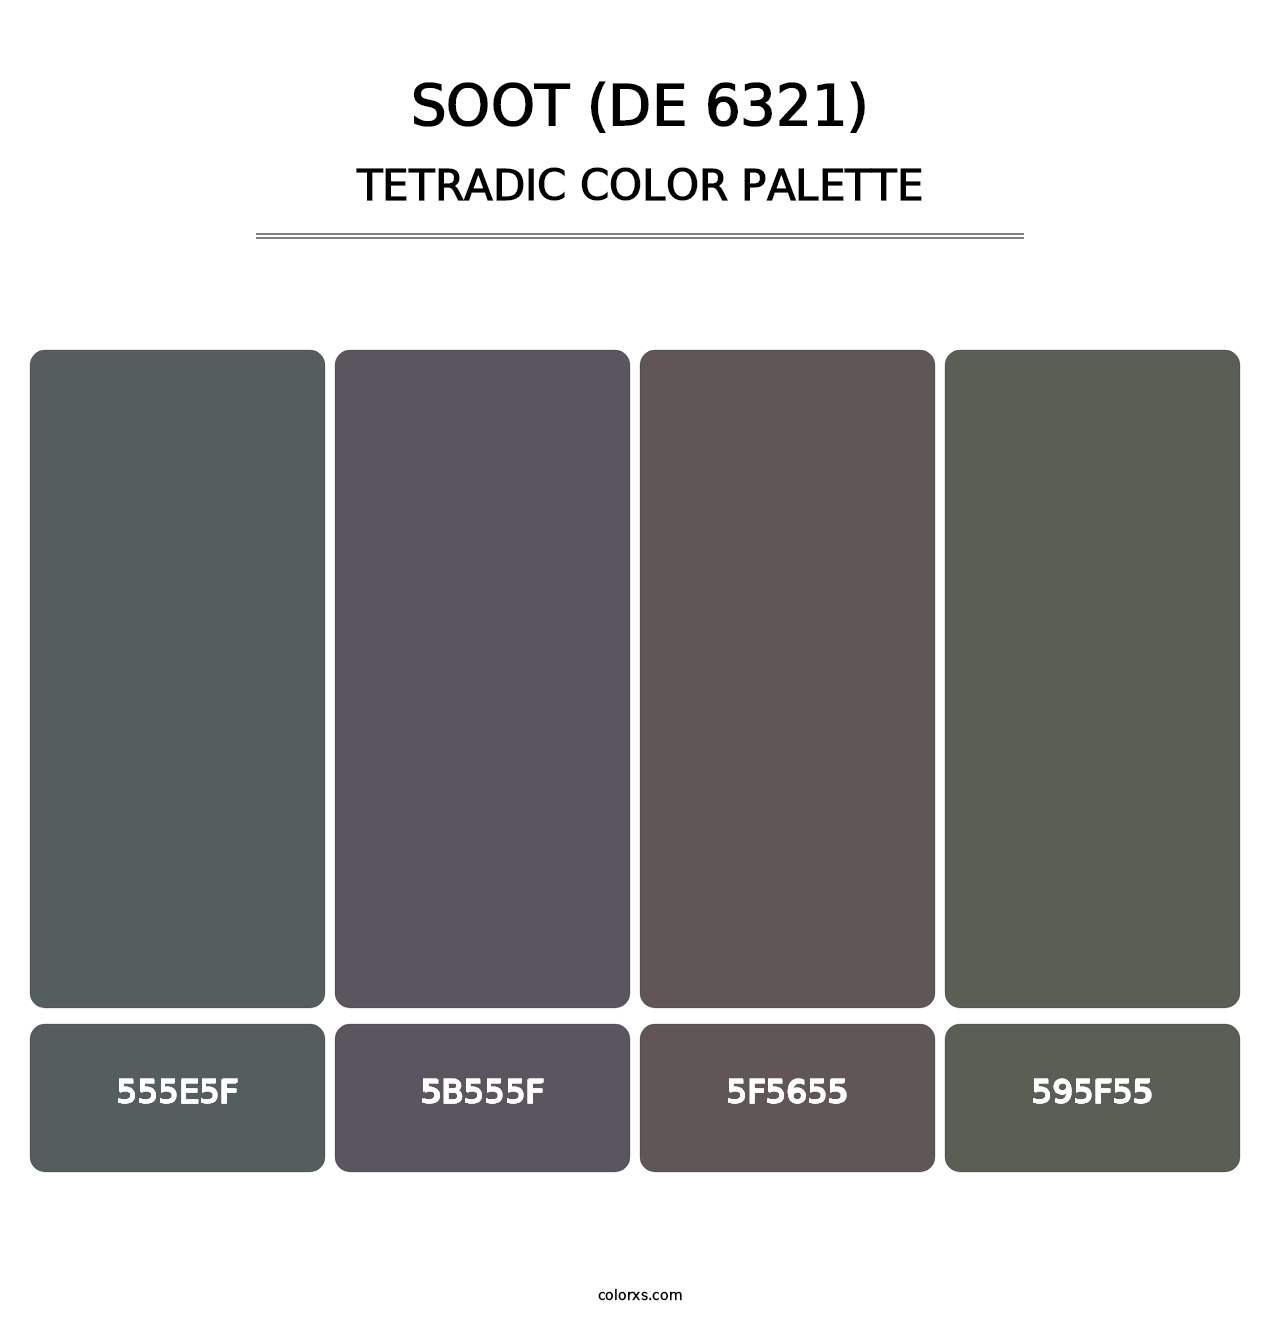 Soot (DE 6321) - Tetradic Color Palette